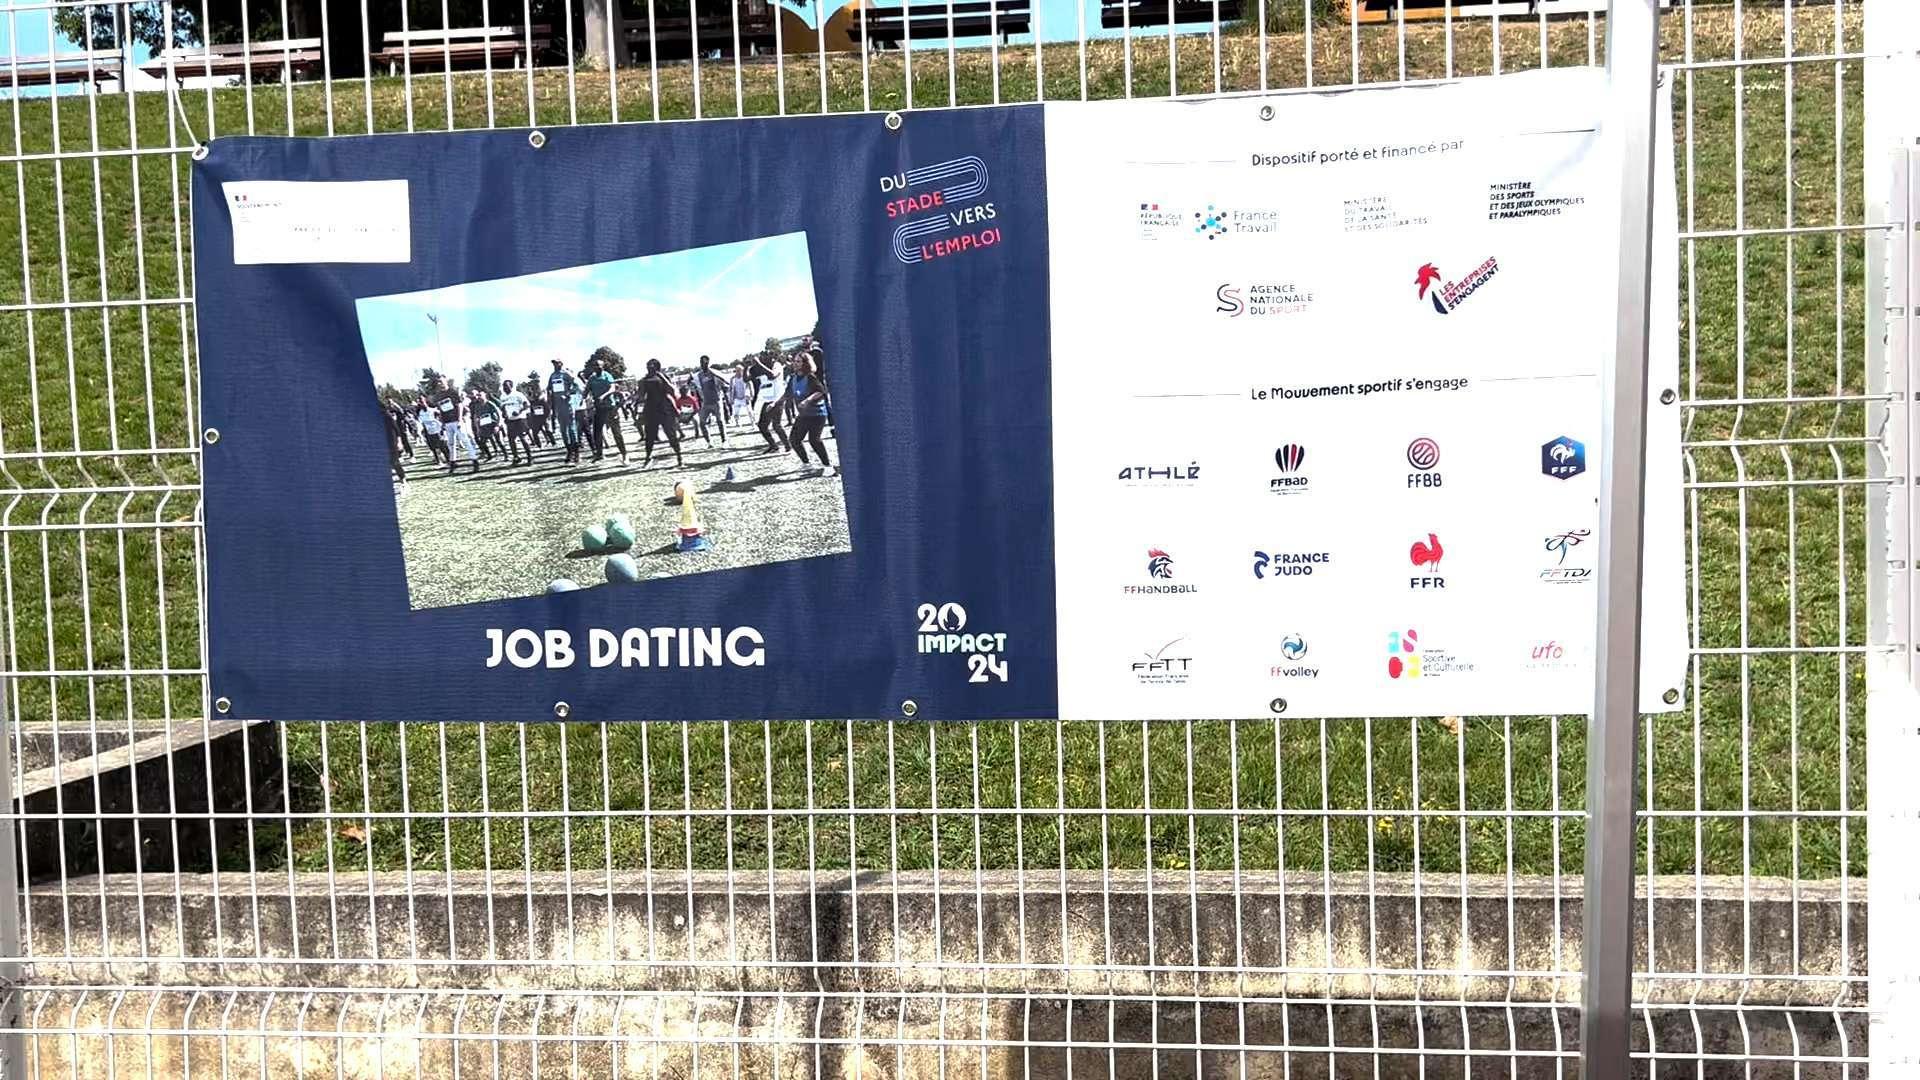 Du stade vers l'emploi à Martigues : faire du sport, pour trouver du travail